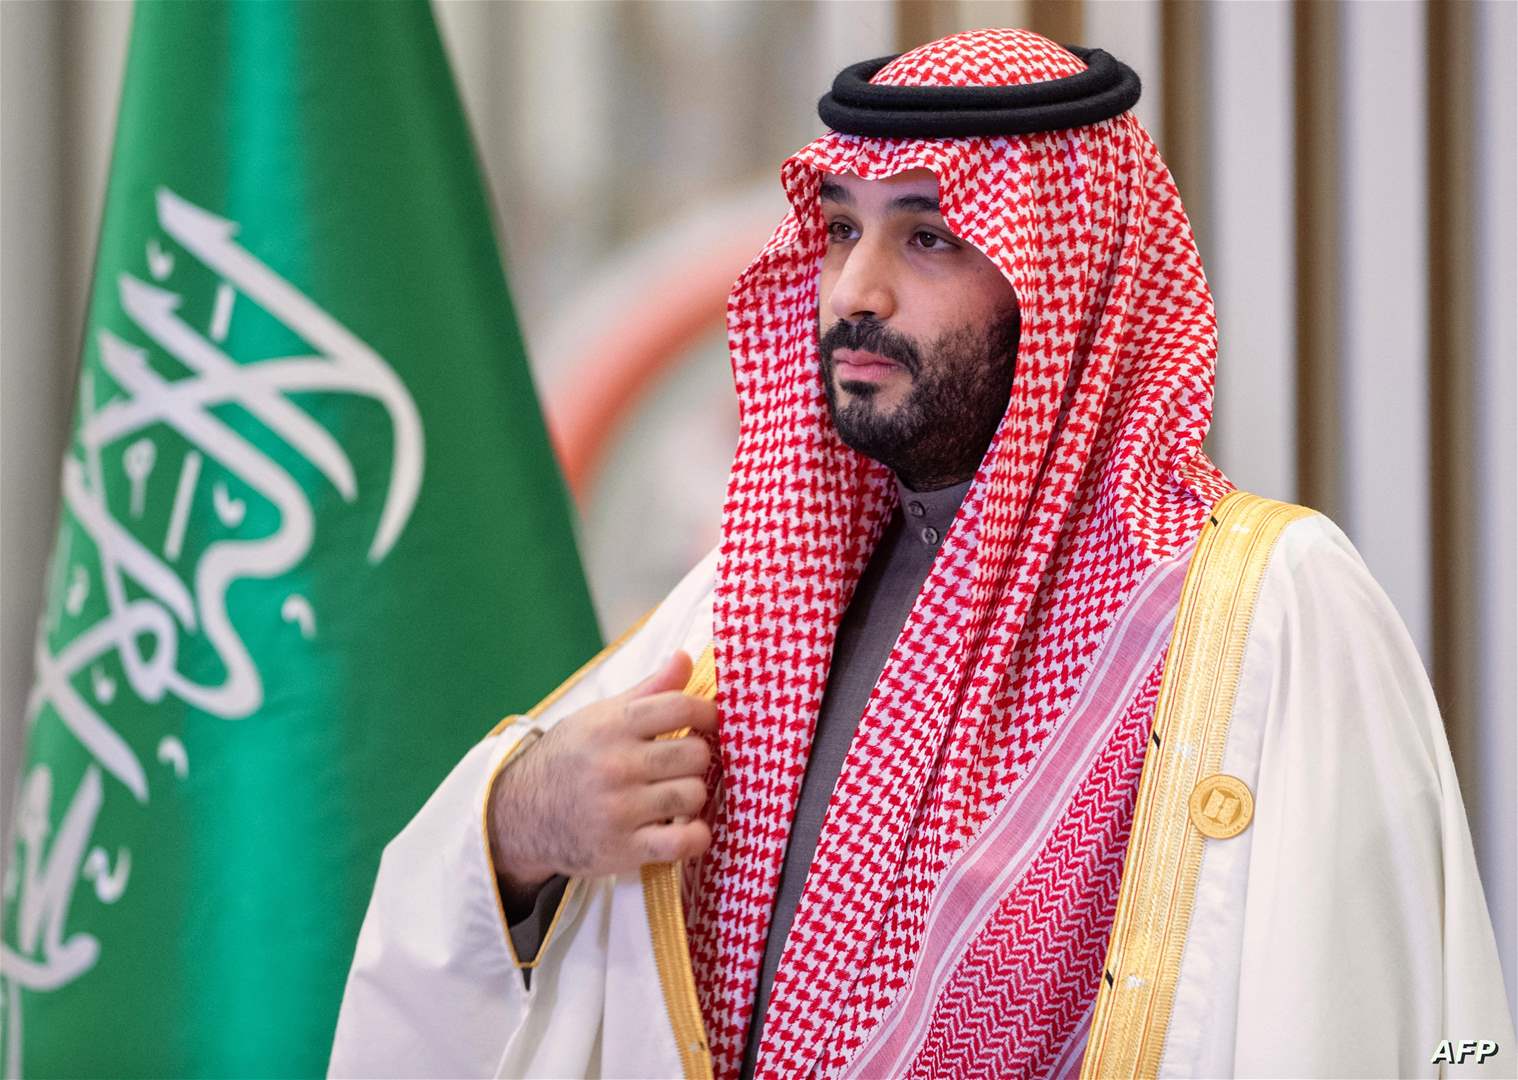 الإتحاد السعودي يعلن نية المملكة الترشح لإستضافة مونديال 2034 وولي العهد : هذه الخطوة تعد انعكاسًا لما وصلنا إليه من نهضة شاملة 